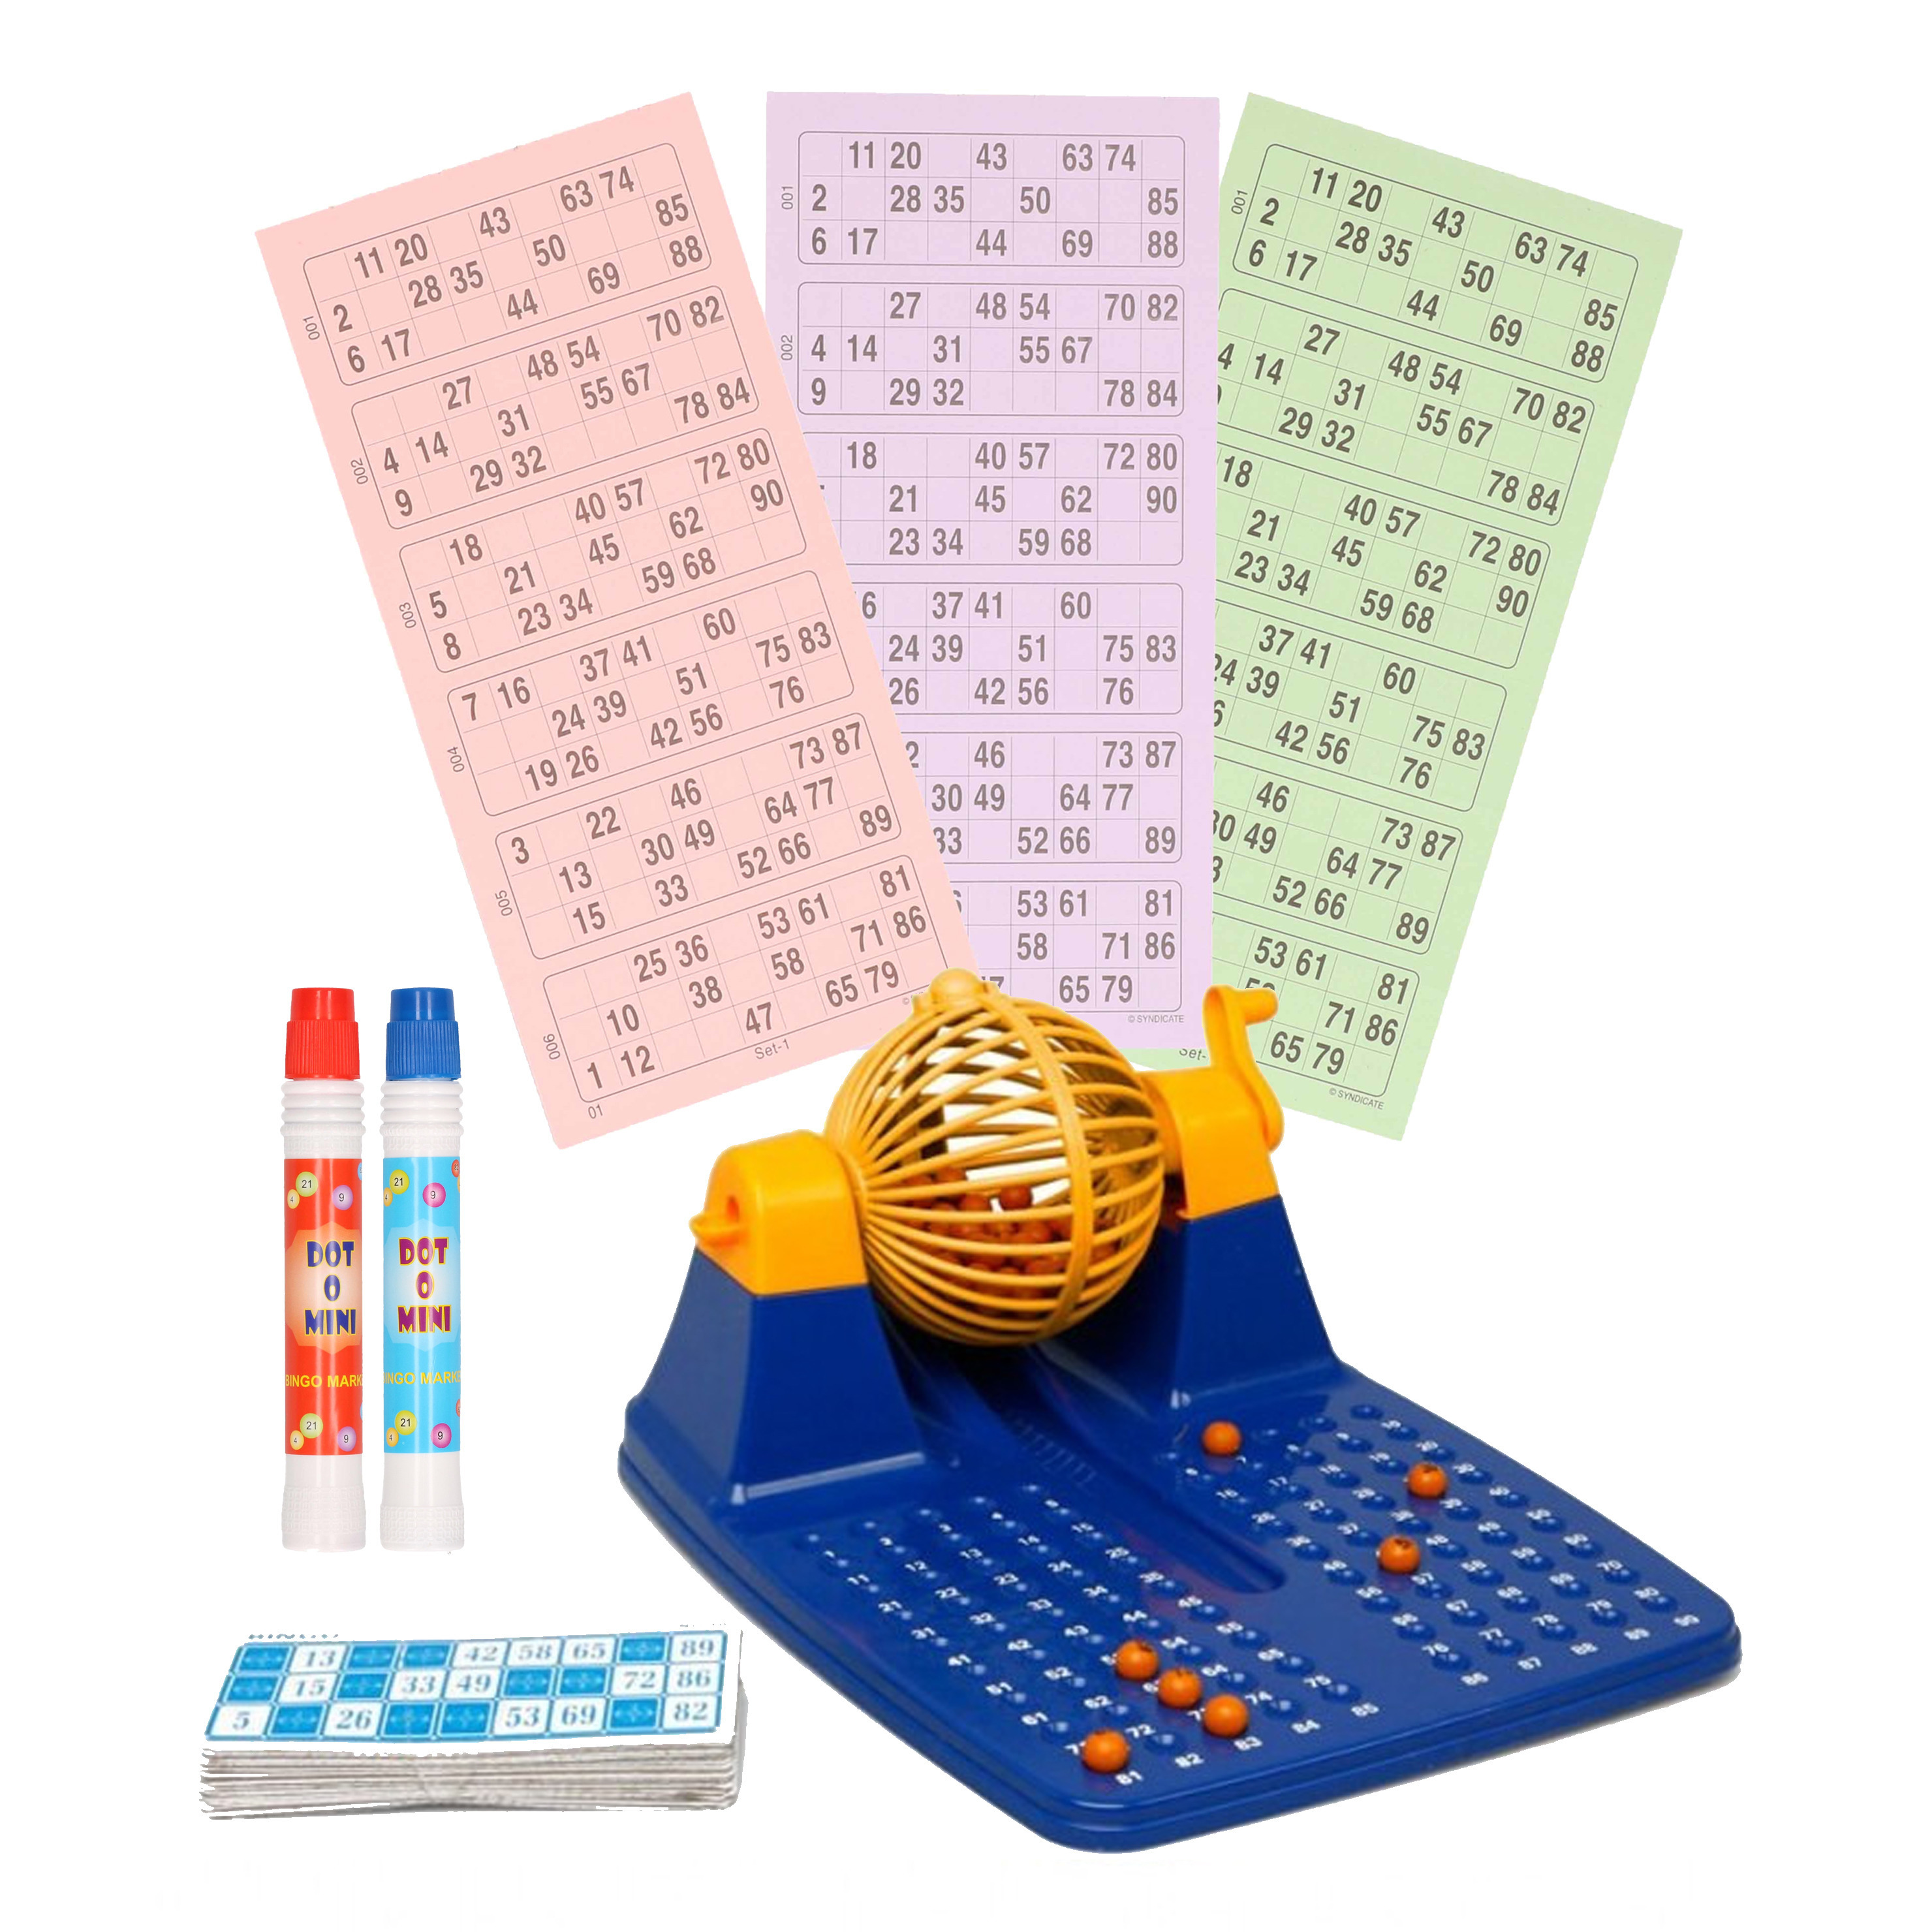 Bingo spel blauw-geel-oranje complete set nummers 1-90 met molen-148x bingokaarten-2x stiften